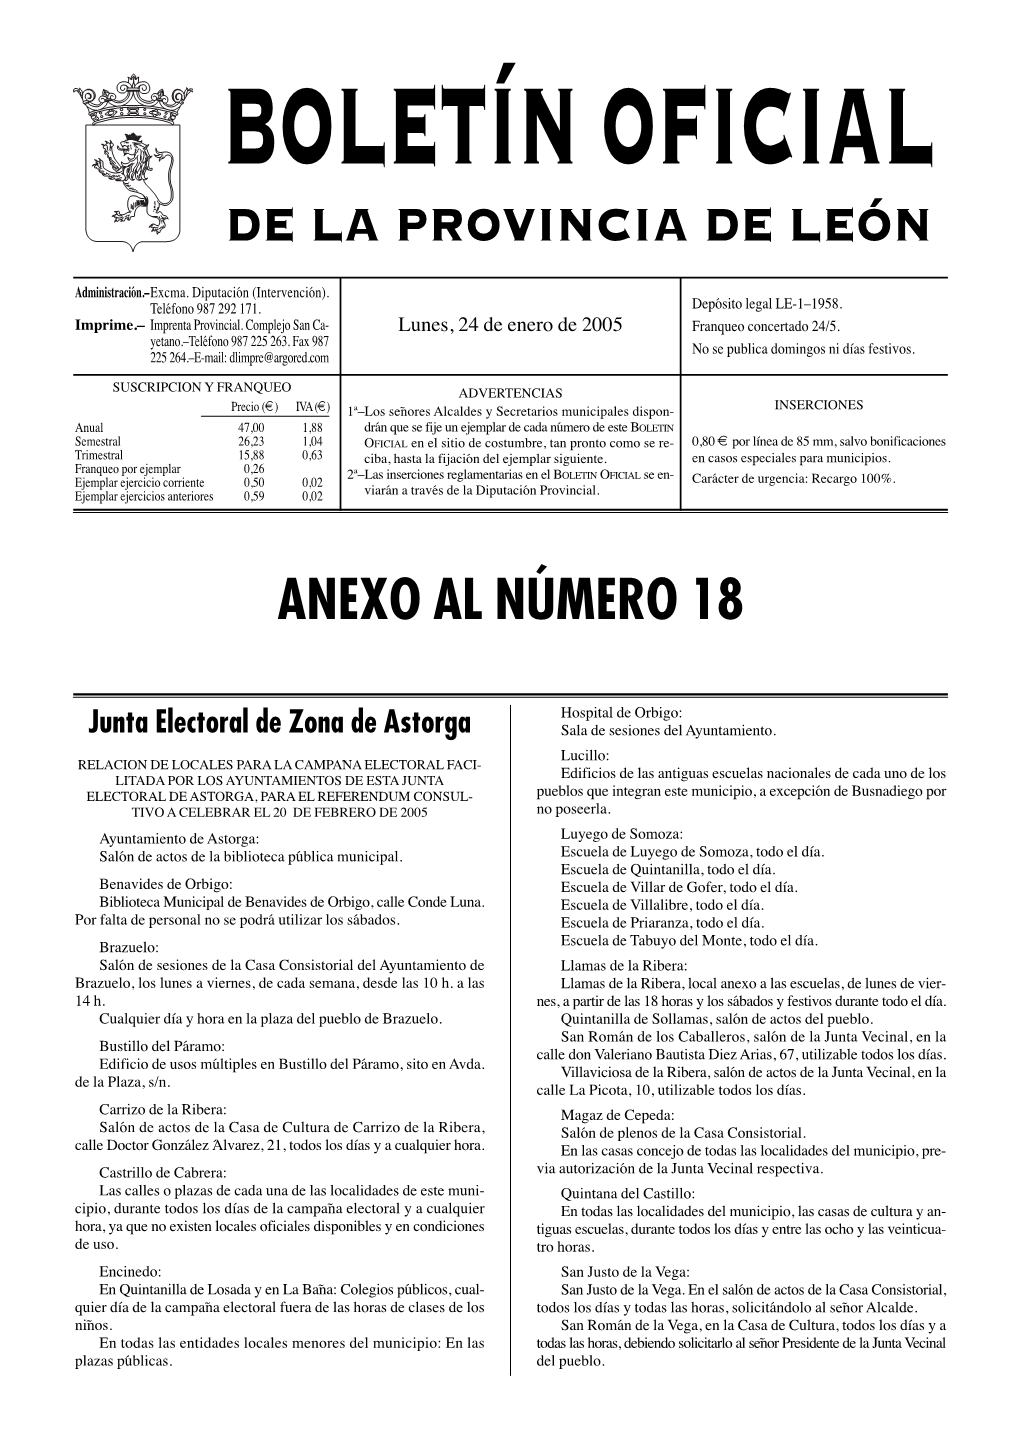 De La Provincia De León